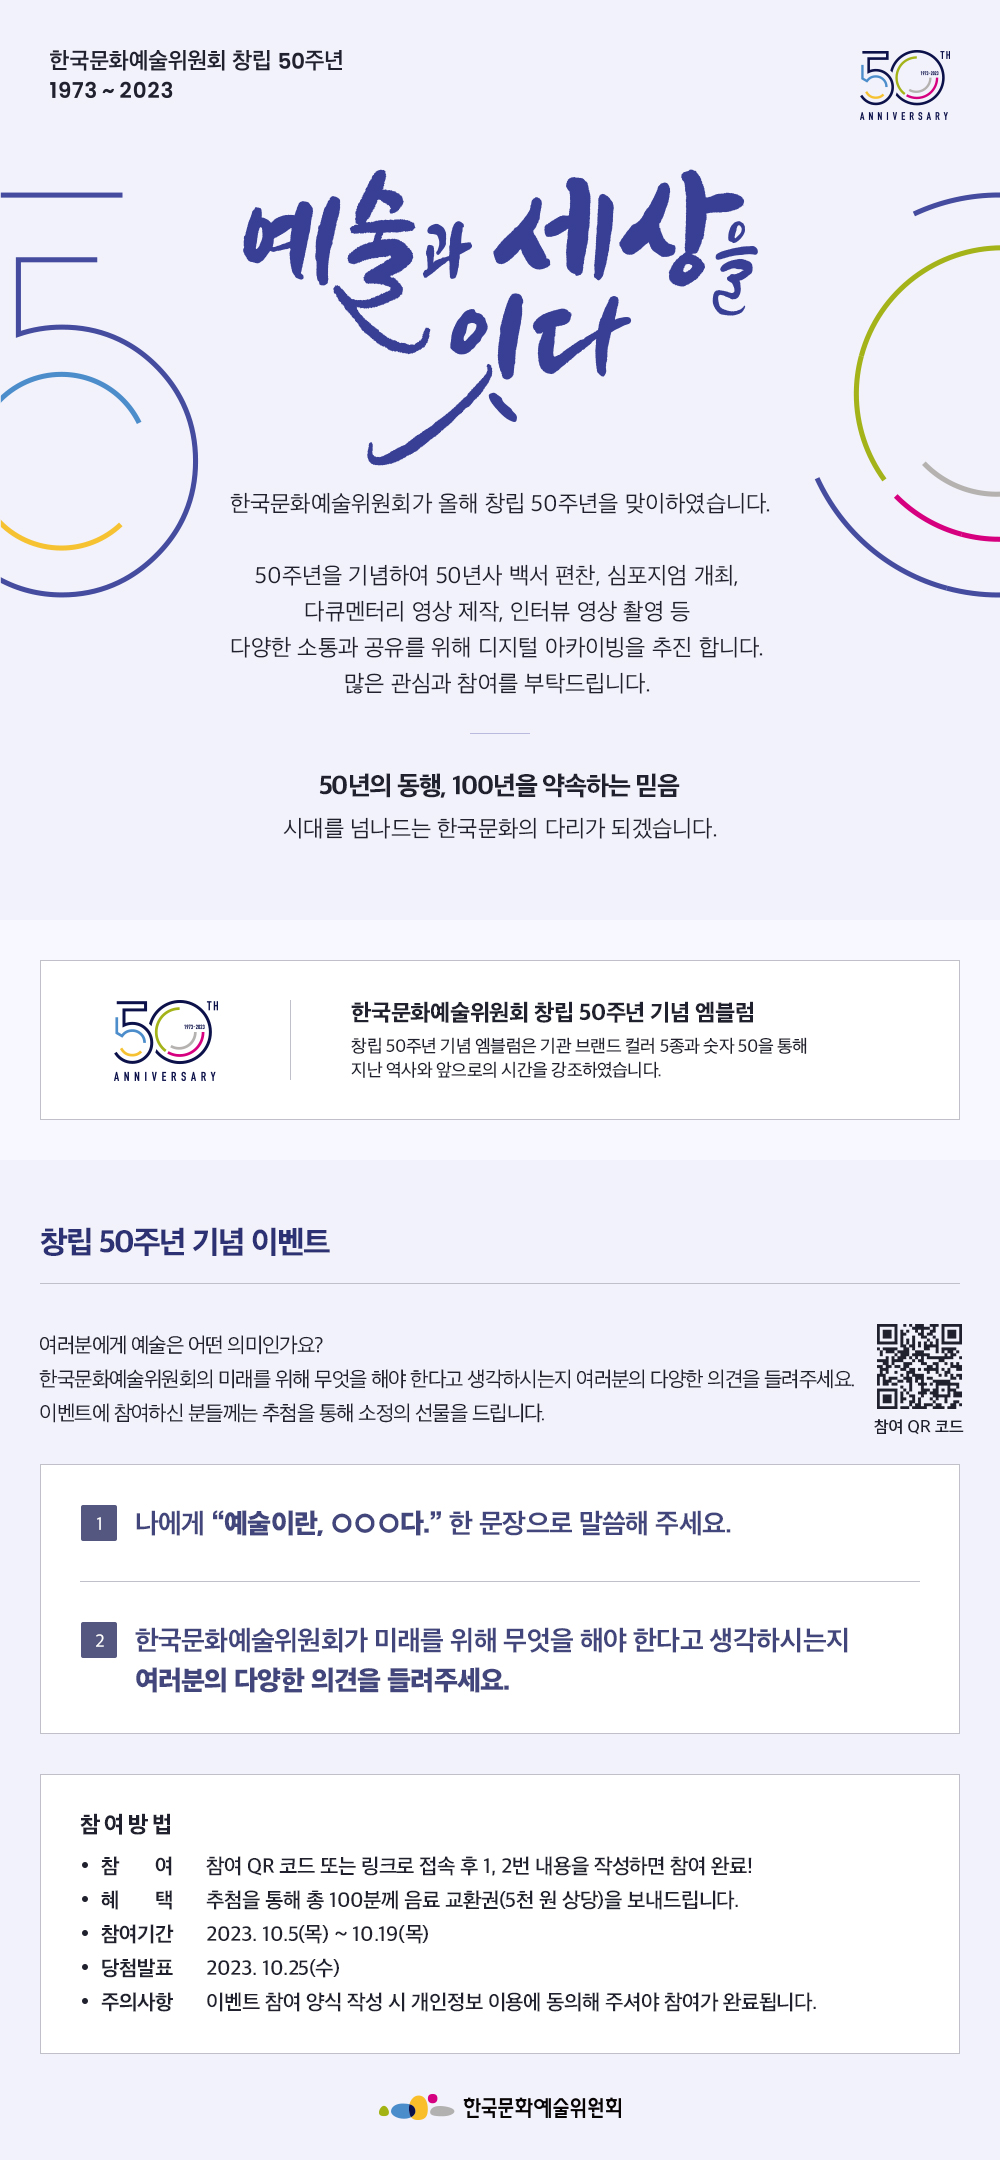 2023년 한국문화예술위원회 창립 50주년 기념 이벤트 안내(자세한 내용 아래 참조)